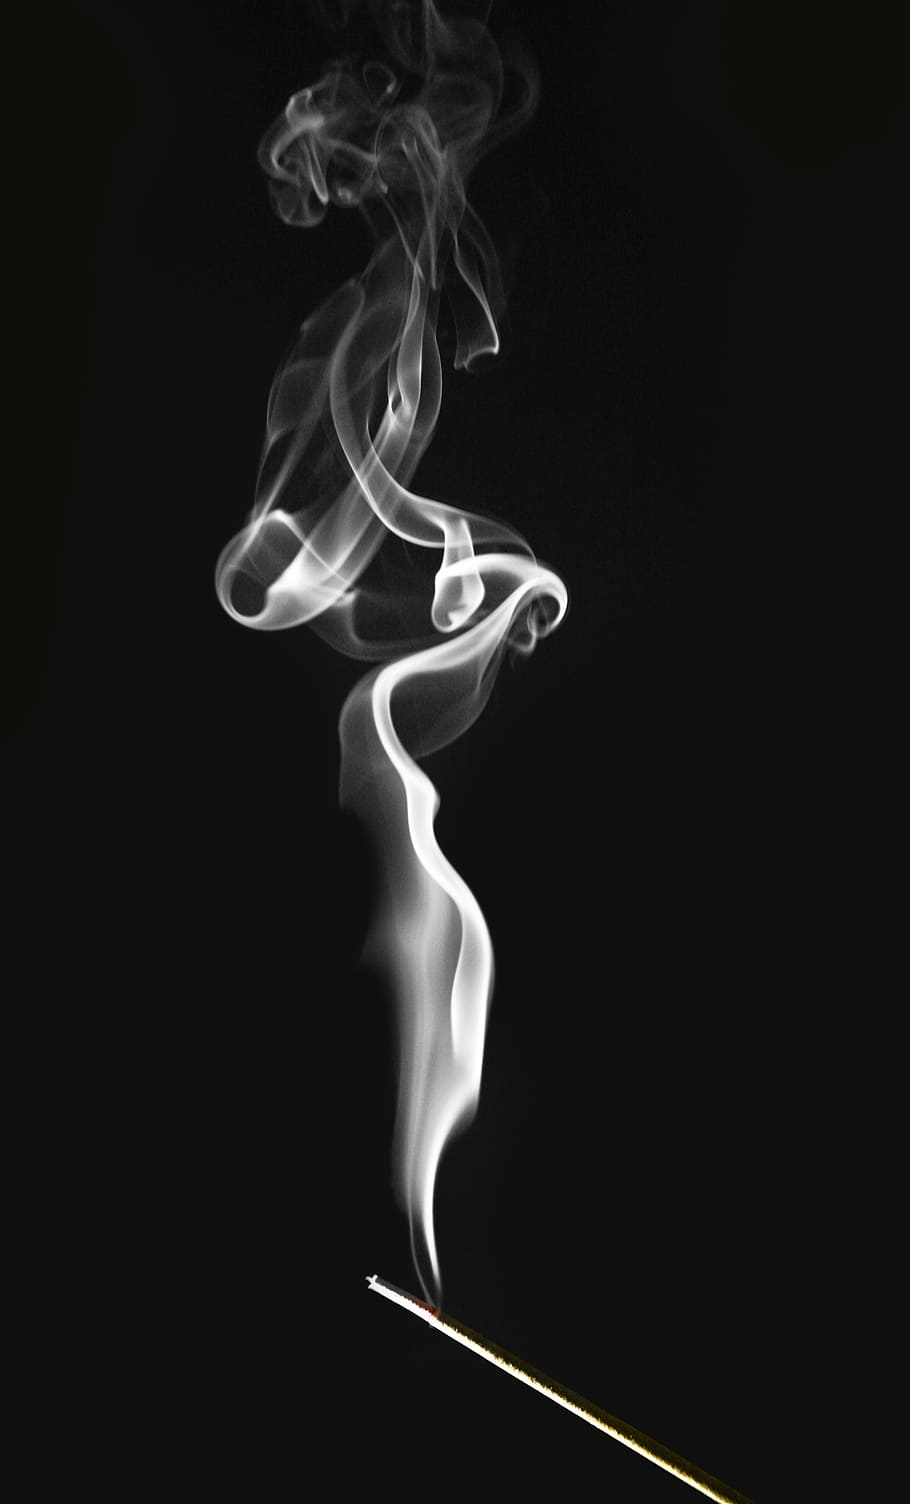 foto, fumaça, preto, plano de fundo, incenso, espirais, redemoinhos, contraste, queimadura, cheiro